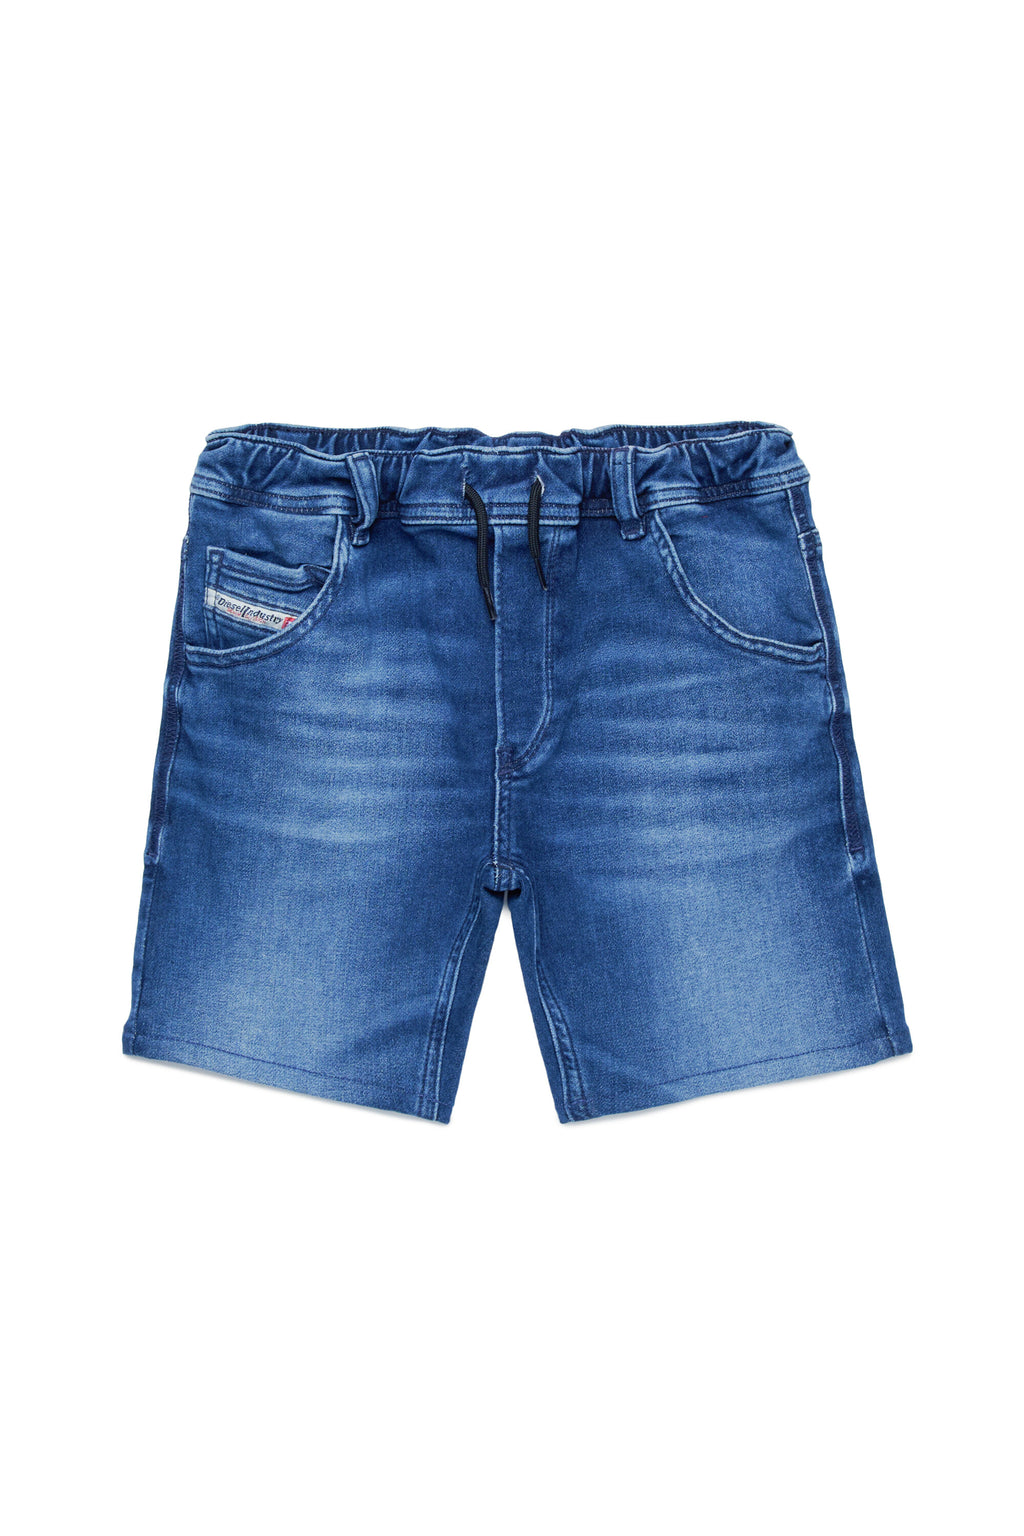 Pantalones cortos JoggJeans® azul oscuro con mallas